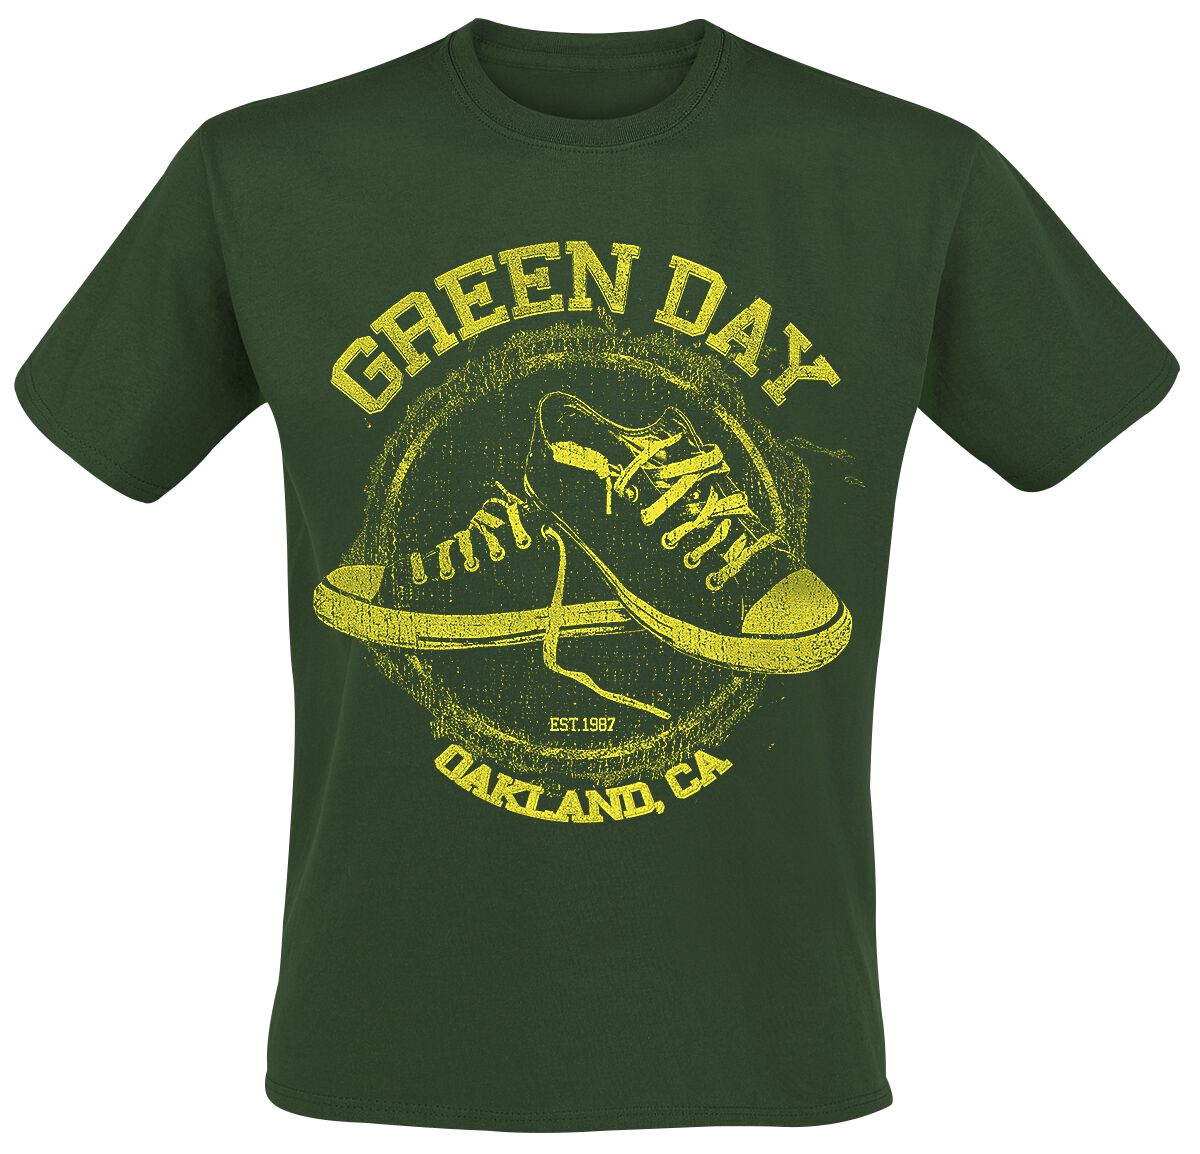 Green Day T-Shirt - All Star - S bis XXL - für Männer - Größe XXL - grün  - Lizenziertes Merchandise!